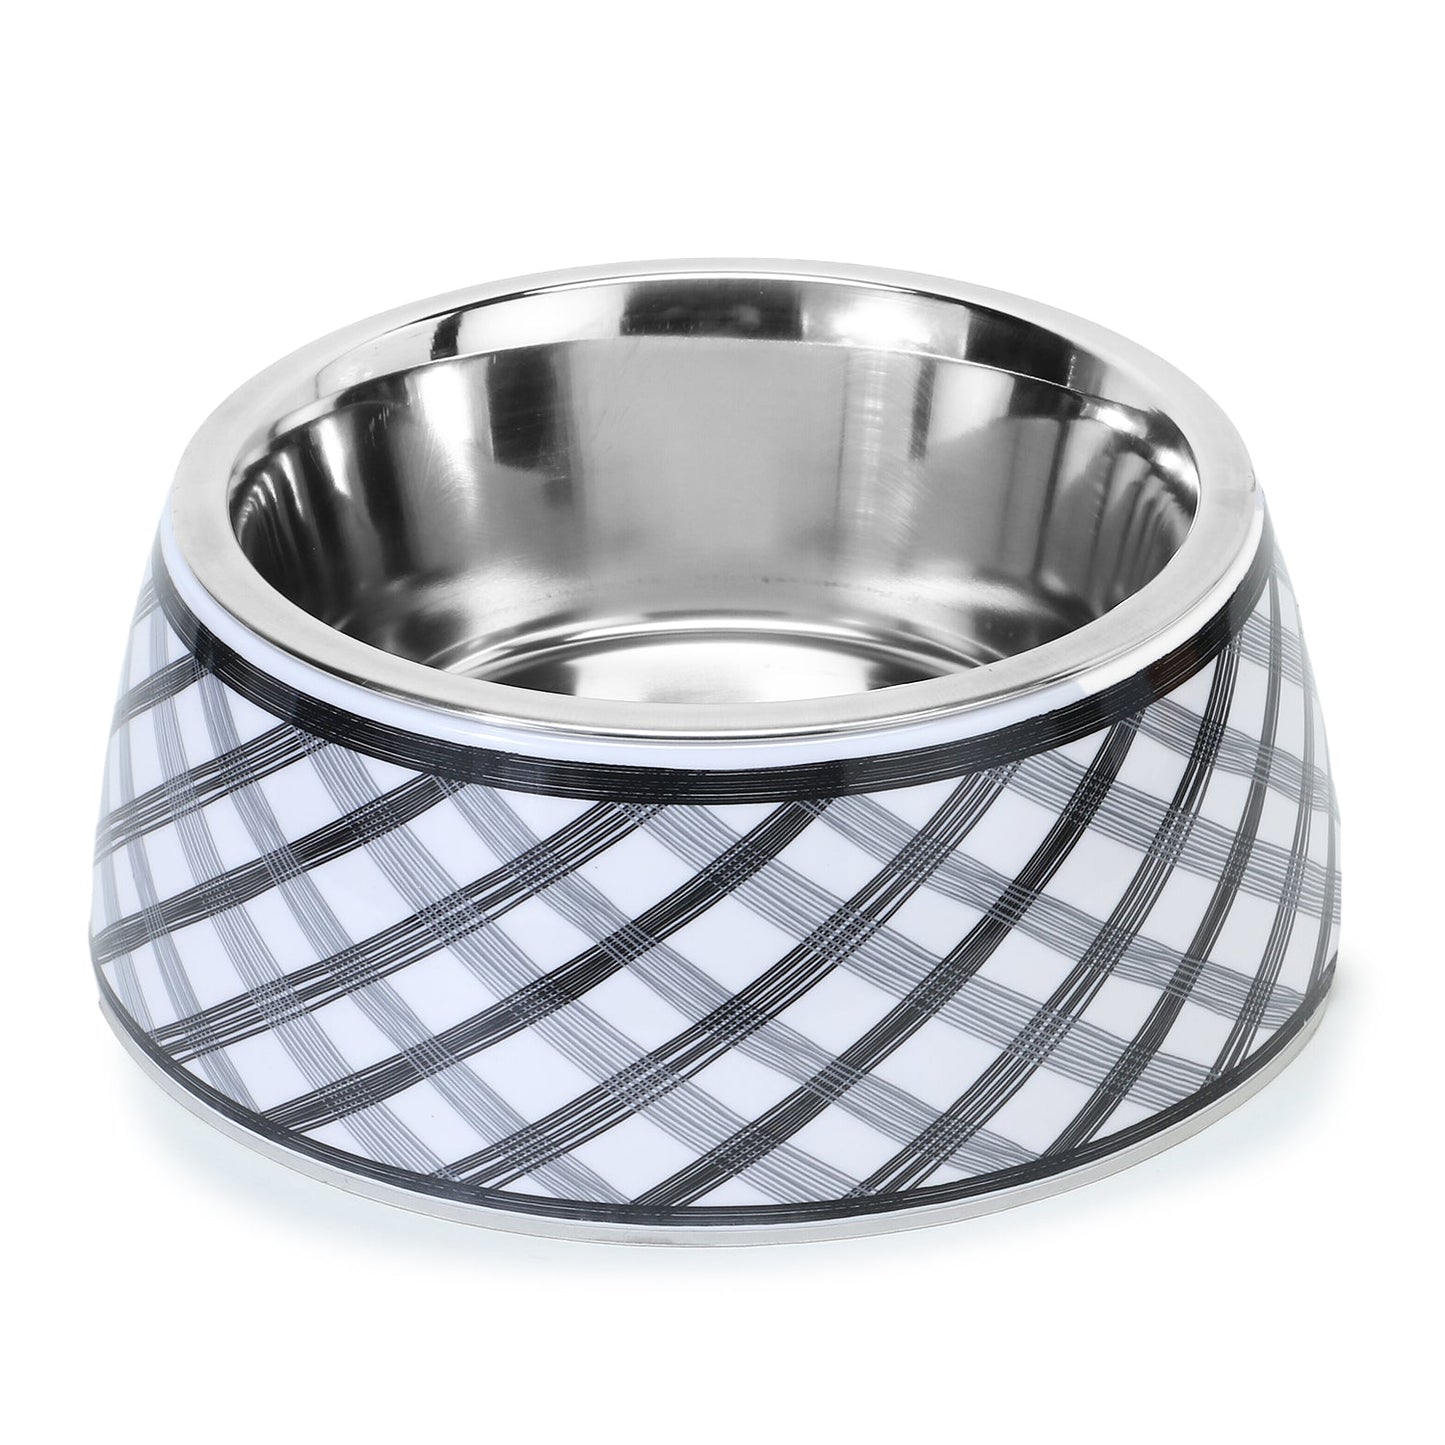 Basil Check Print Pet Feeding Bowl, Stainless Steel & Melamine